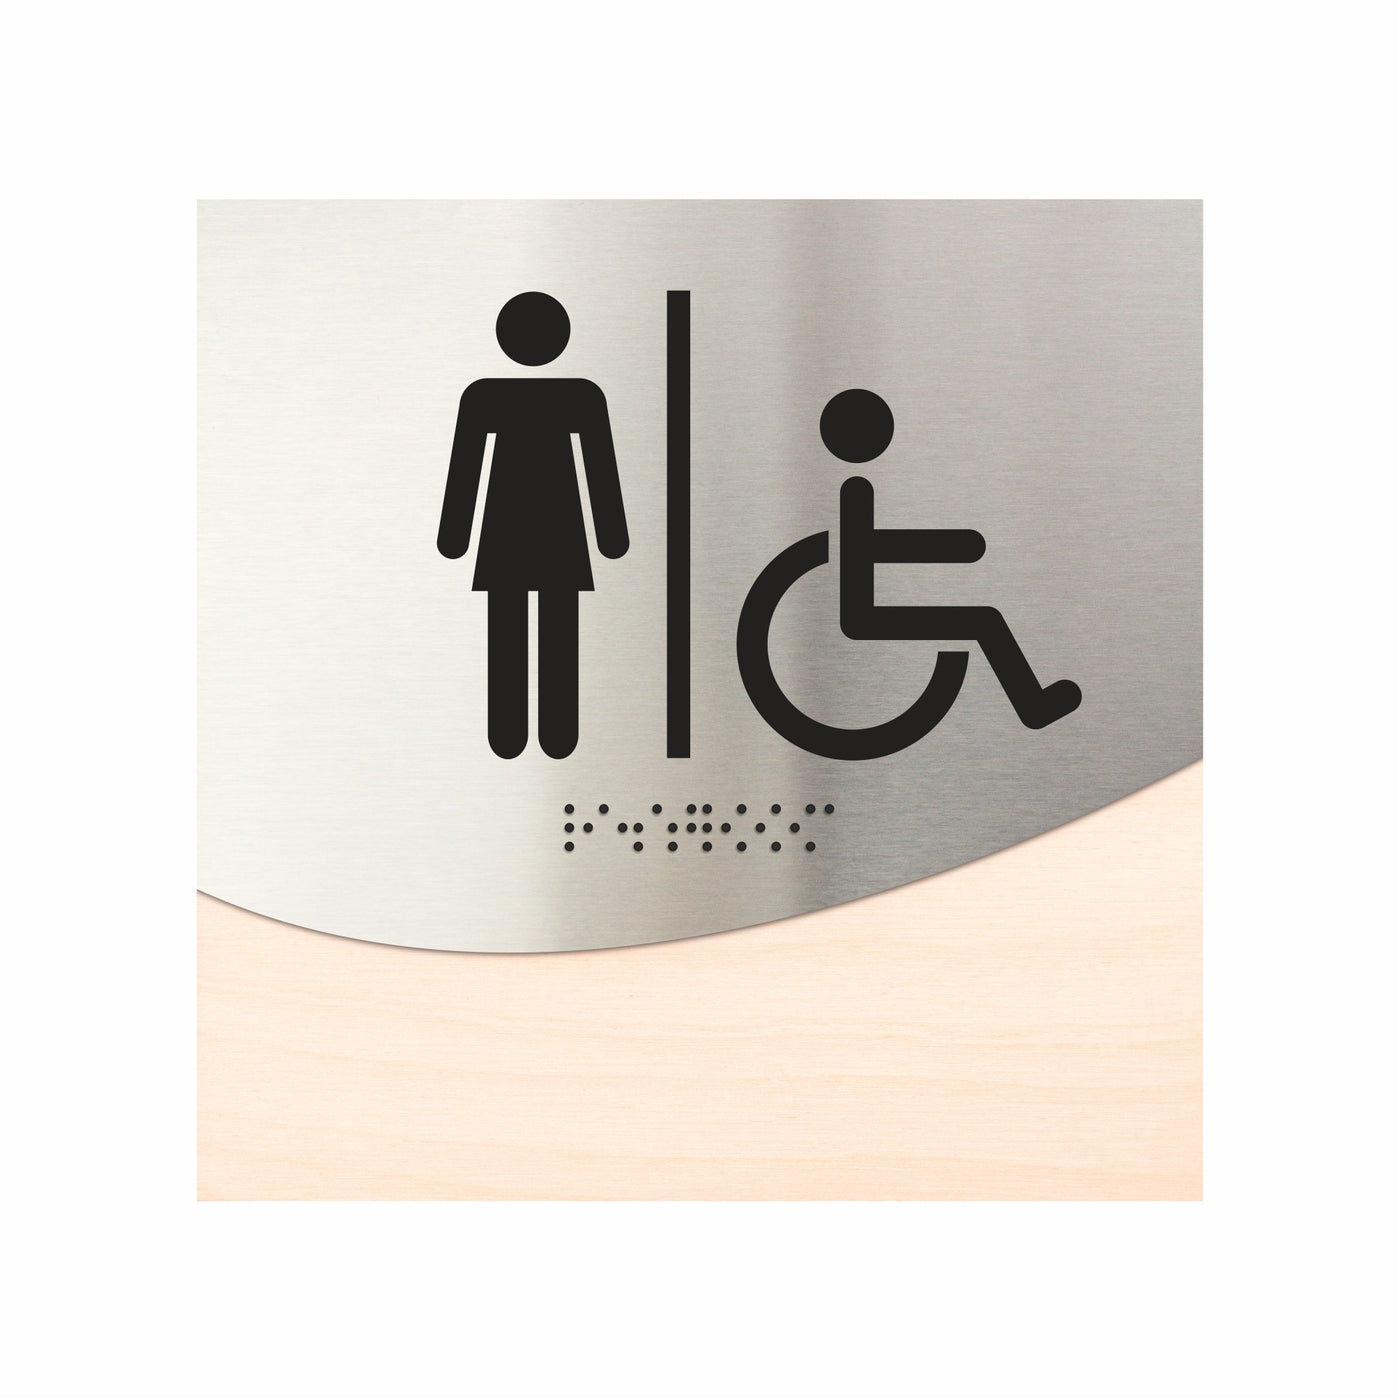 Women & Wheelchair Bathroom Signage "Jure" Design